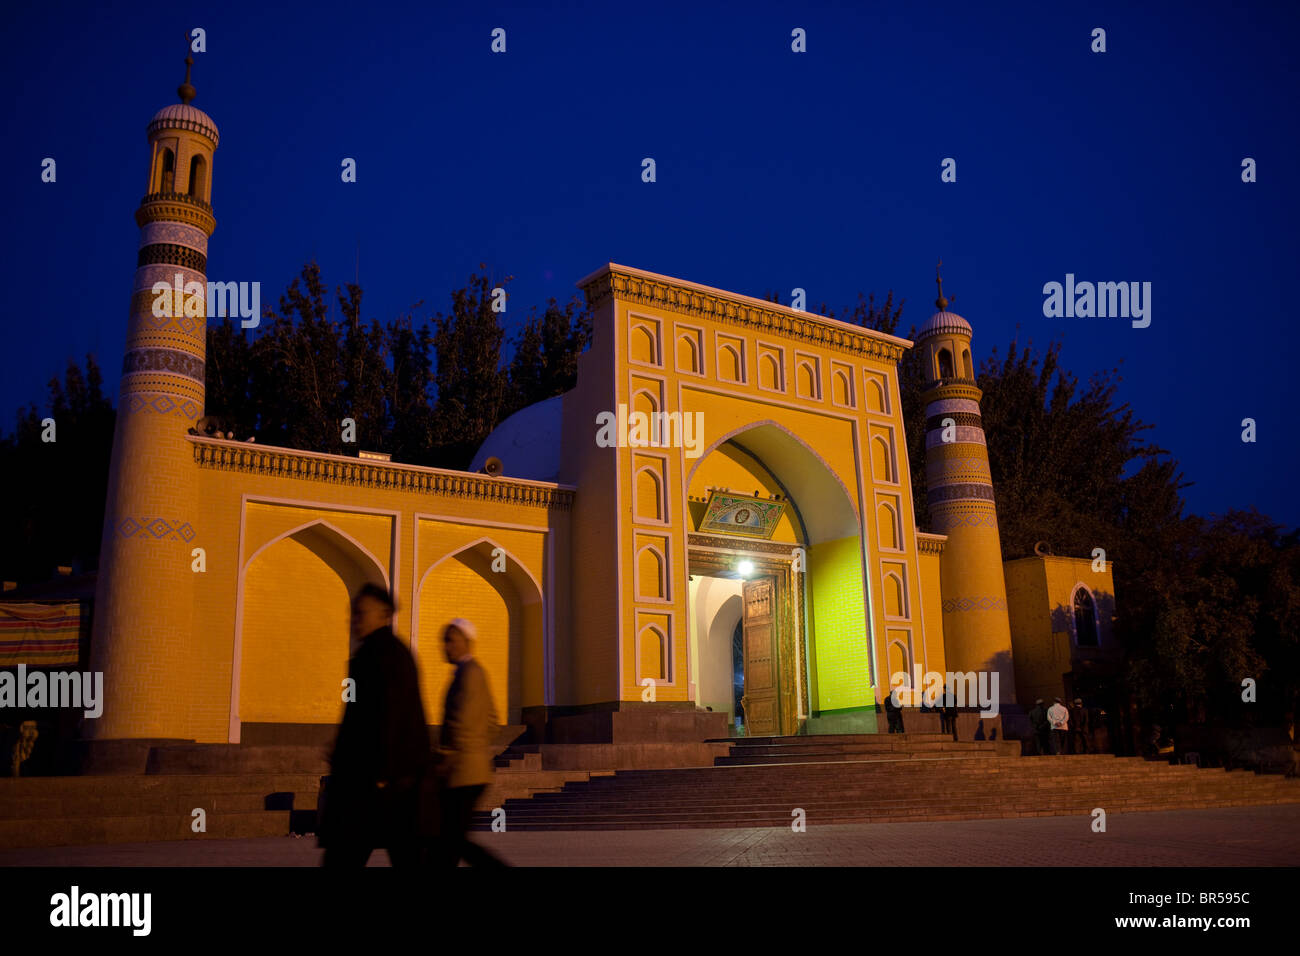 Id Kah mosques at night Kashgar Xinjiang China. Stock Photo